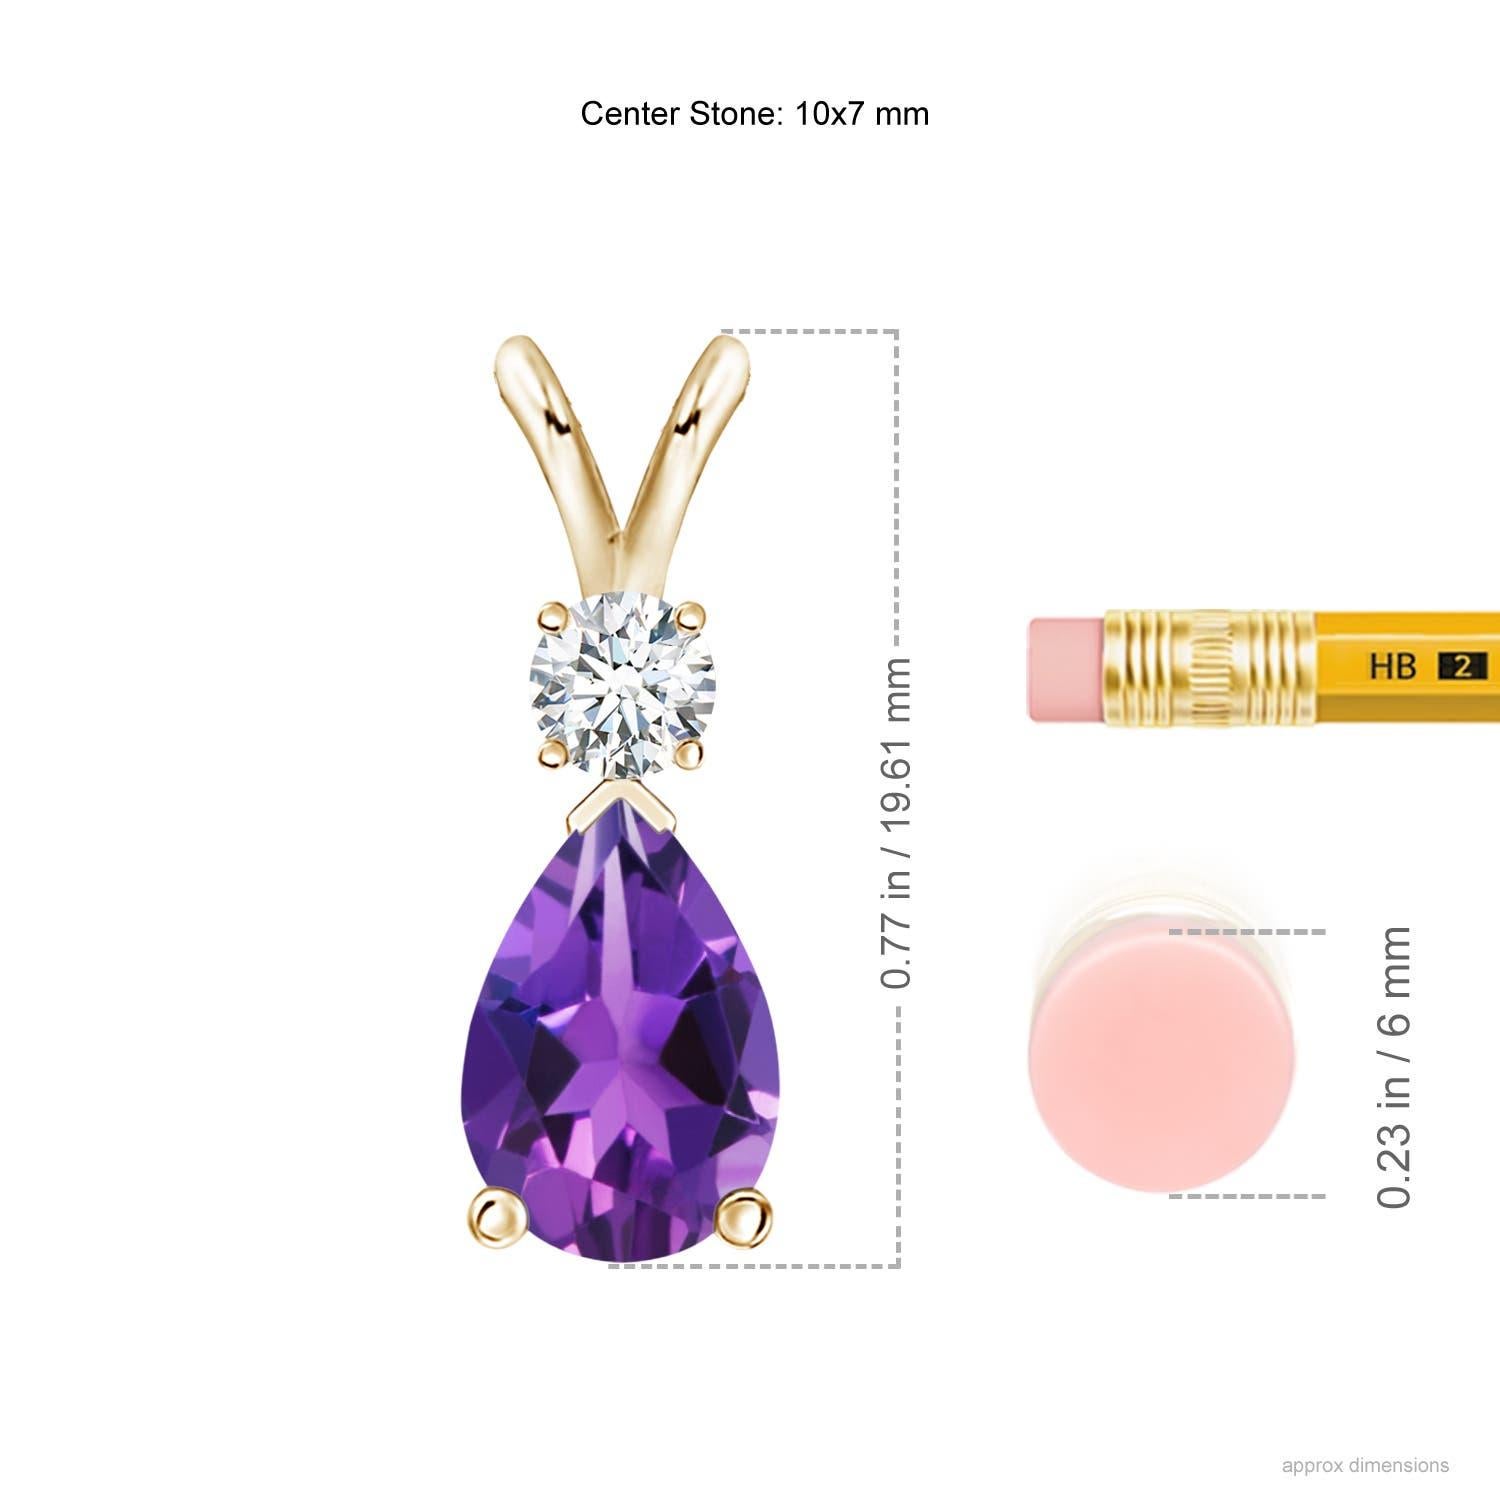 Une améthyste violette profonde en forme de poire est fixée dans une monture à griffes et agrémentée d'un diamant sur le dessus. Simple mais éblouissant, ce pendentif en forme de larme d'améthyste avec une balle en V est sculpté dans de l'or jaune